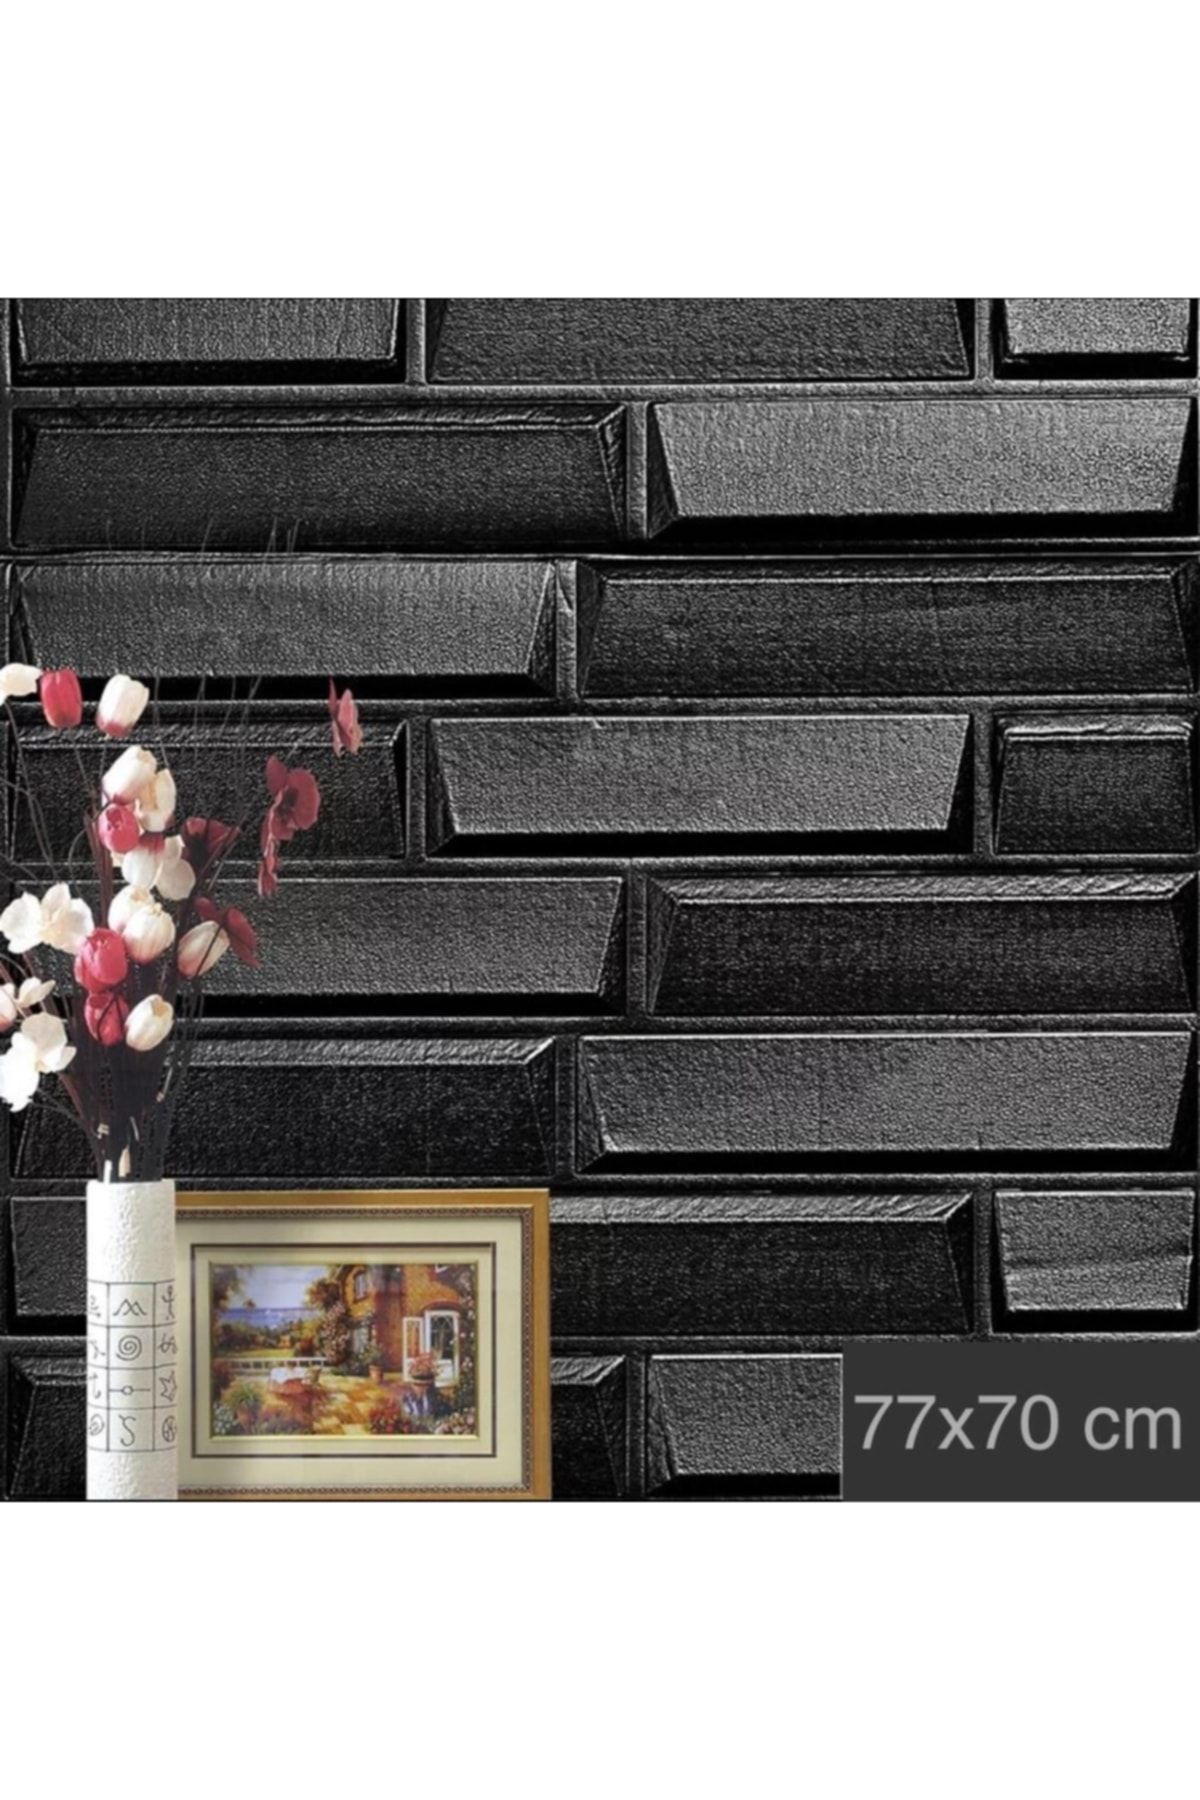 Renkli Duvarlar Nw66 Siyah Opak Arkası Yapışkanlı Esnek Silinebilir Duvar Paneli Duvar Kağıdı